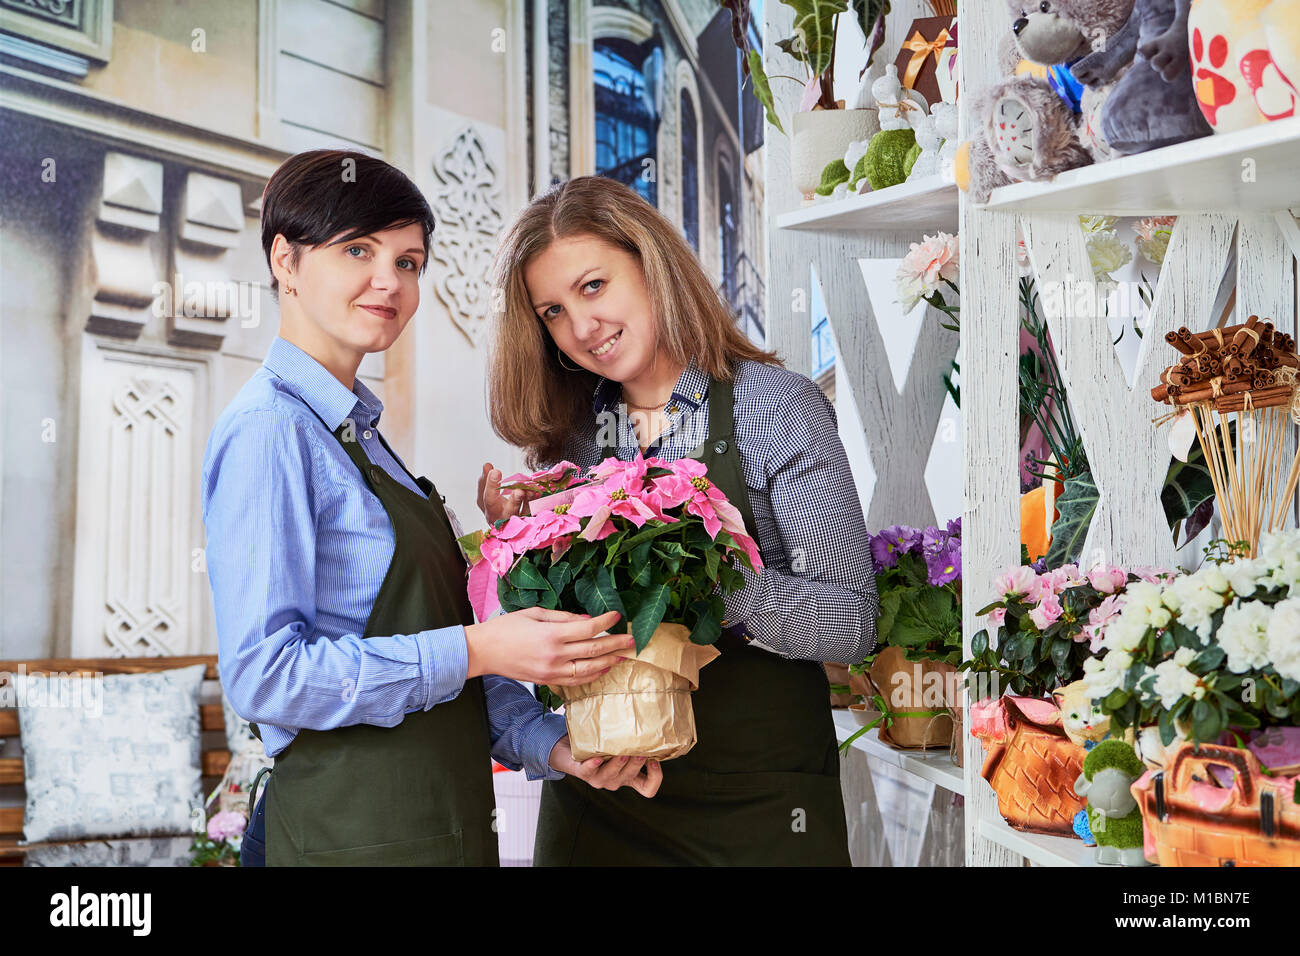 Petite Fleur d'affaires. Les femmes travaillant dans le magasin de fleurs. Banque D'Images